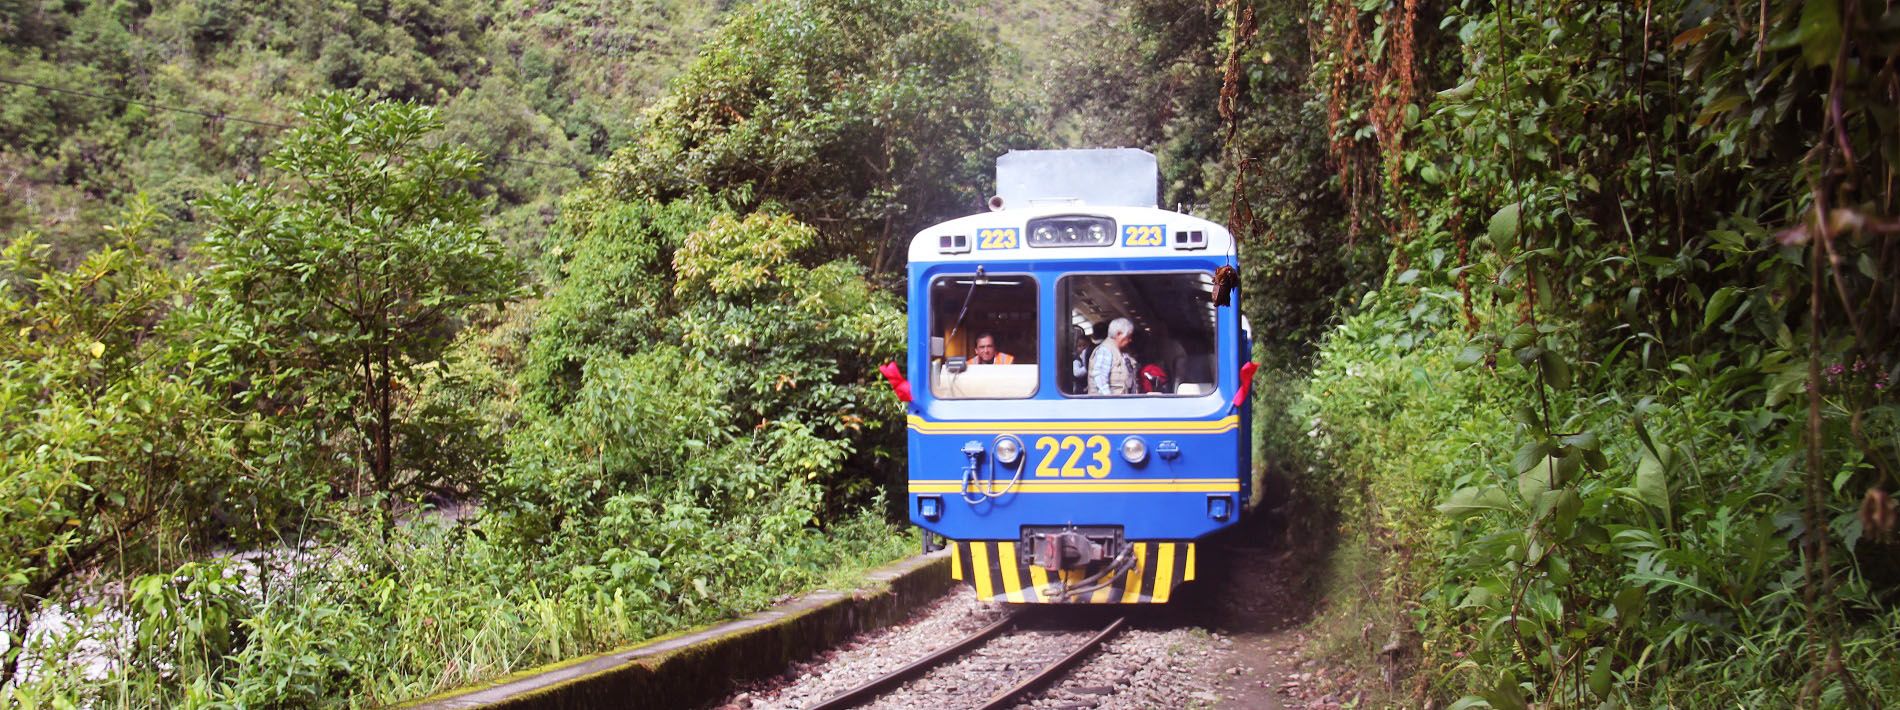 Train Track to Machu Picchu - 2 Day Inca Trail to Machu Picchu